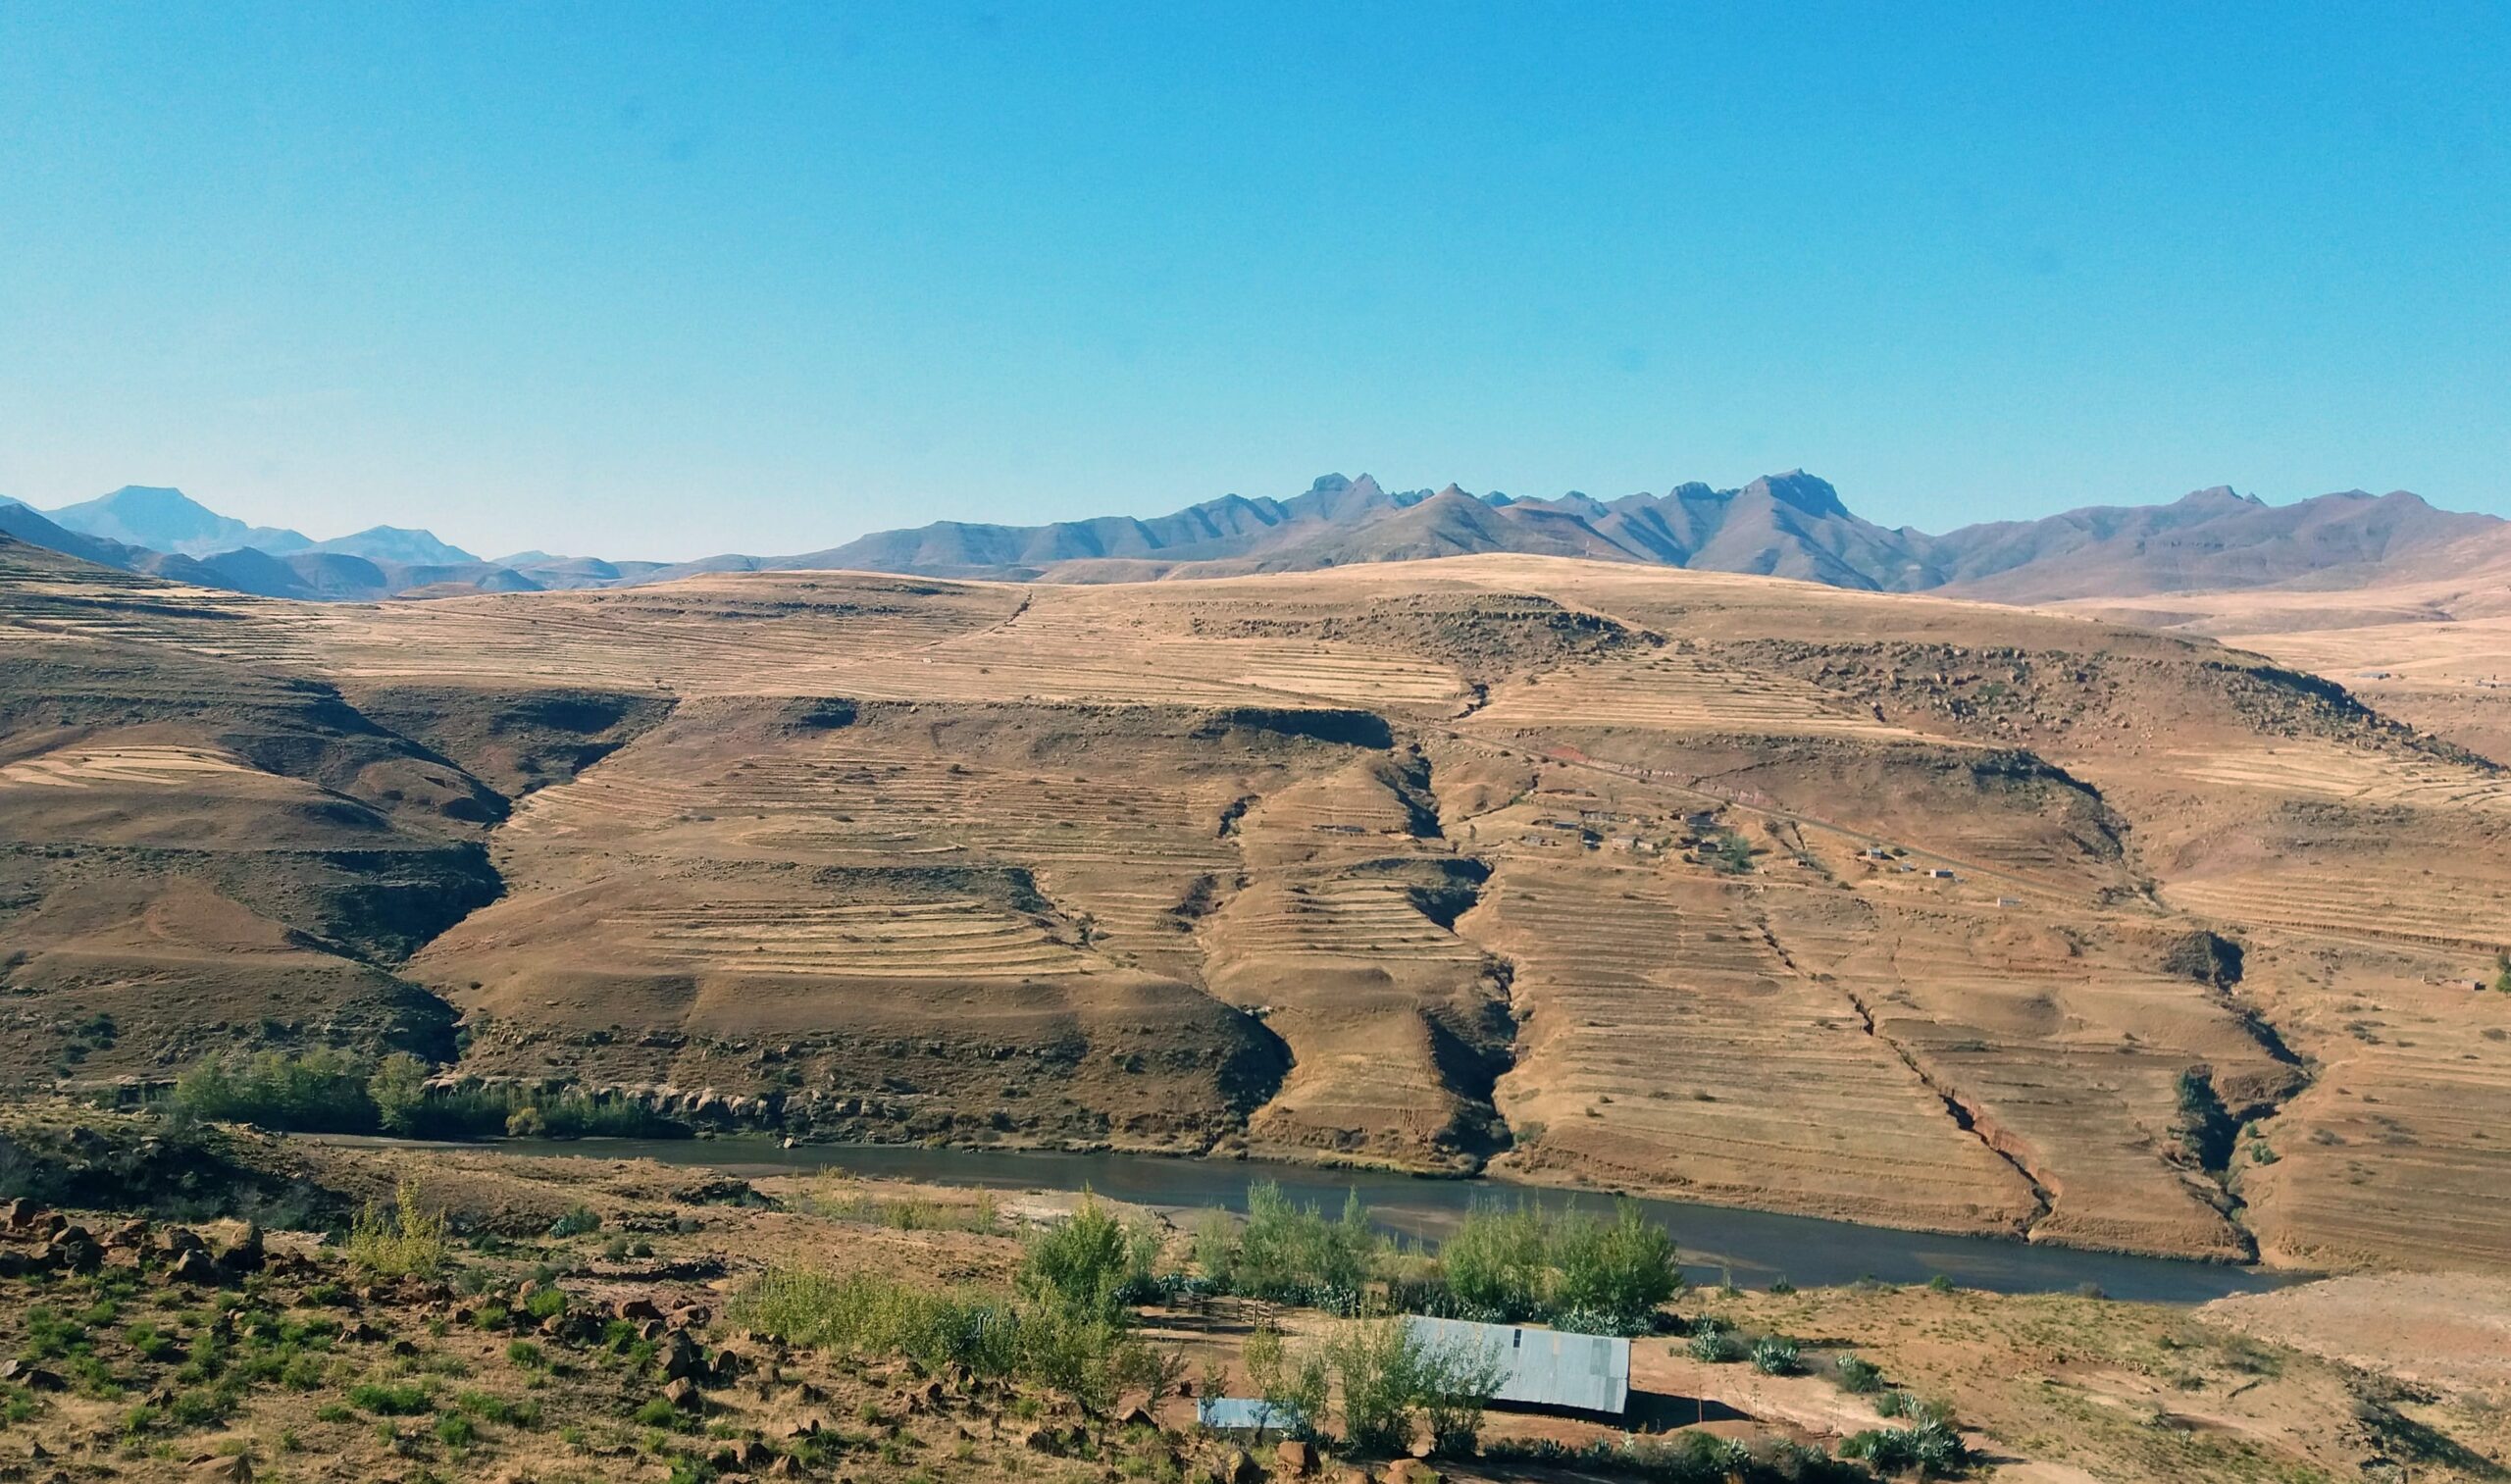 Metolong, Lesotho